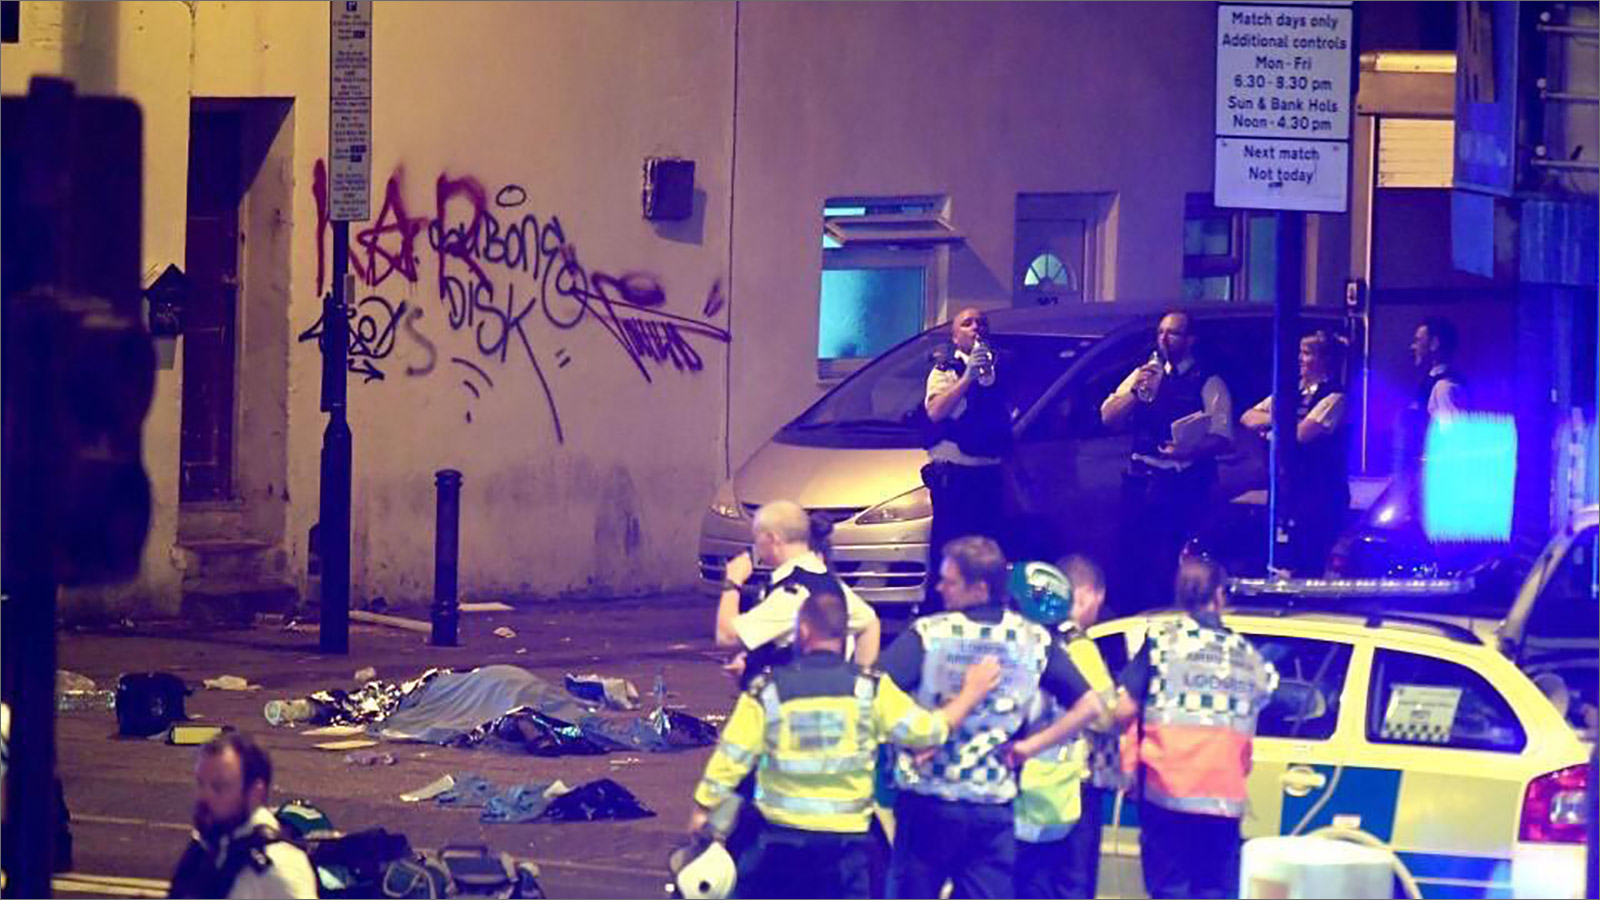 الشرطة في موقع دعس يميني متطرف لمسلمين بعد انتهائهم من صلاة التراويح بمسجد فينسبري شمال لندن